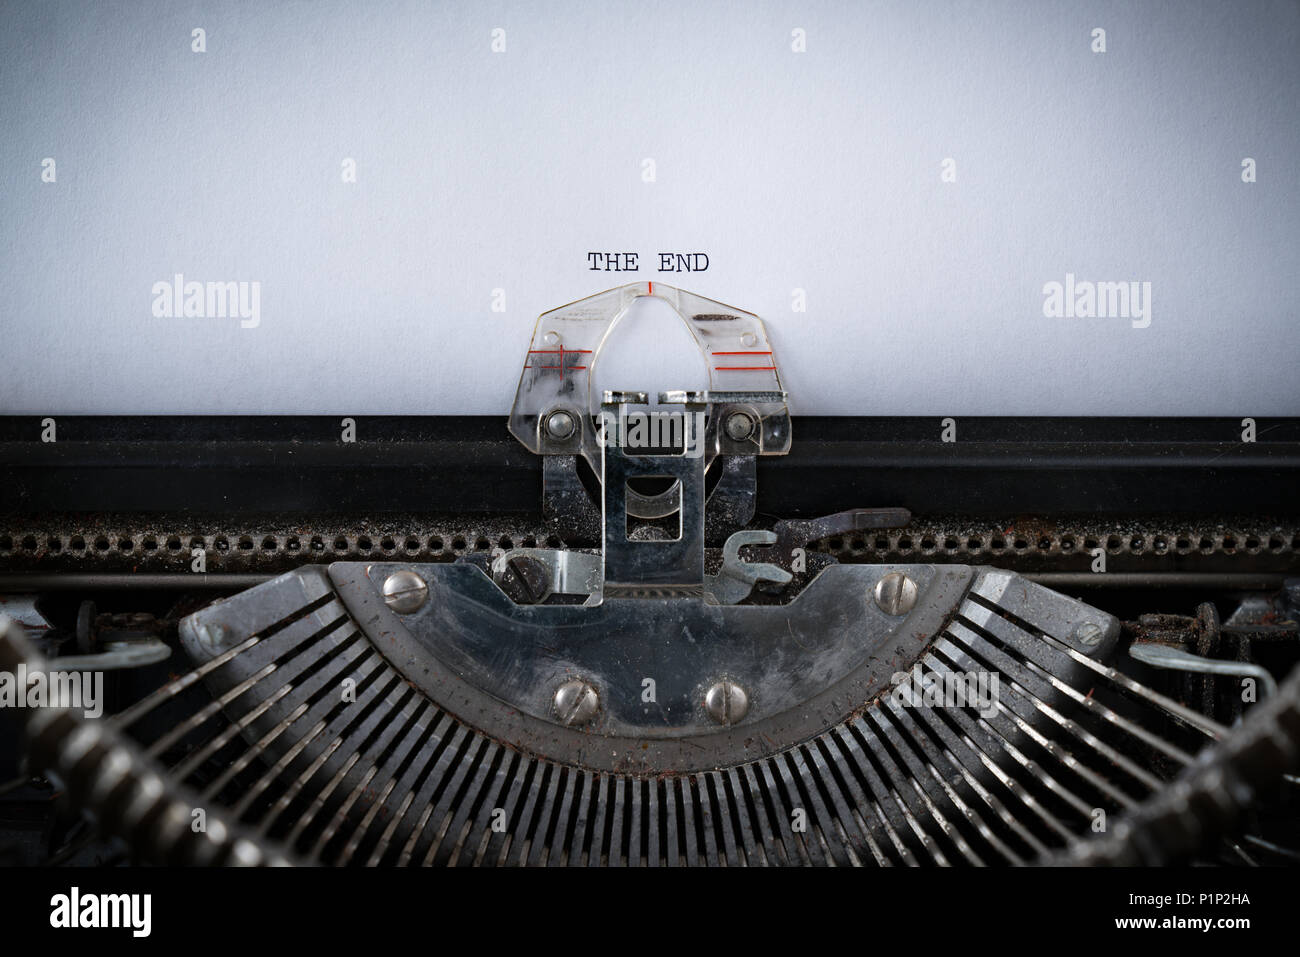 L'expression la fin tapé sur une vieille machine à écrire Banque D'Images